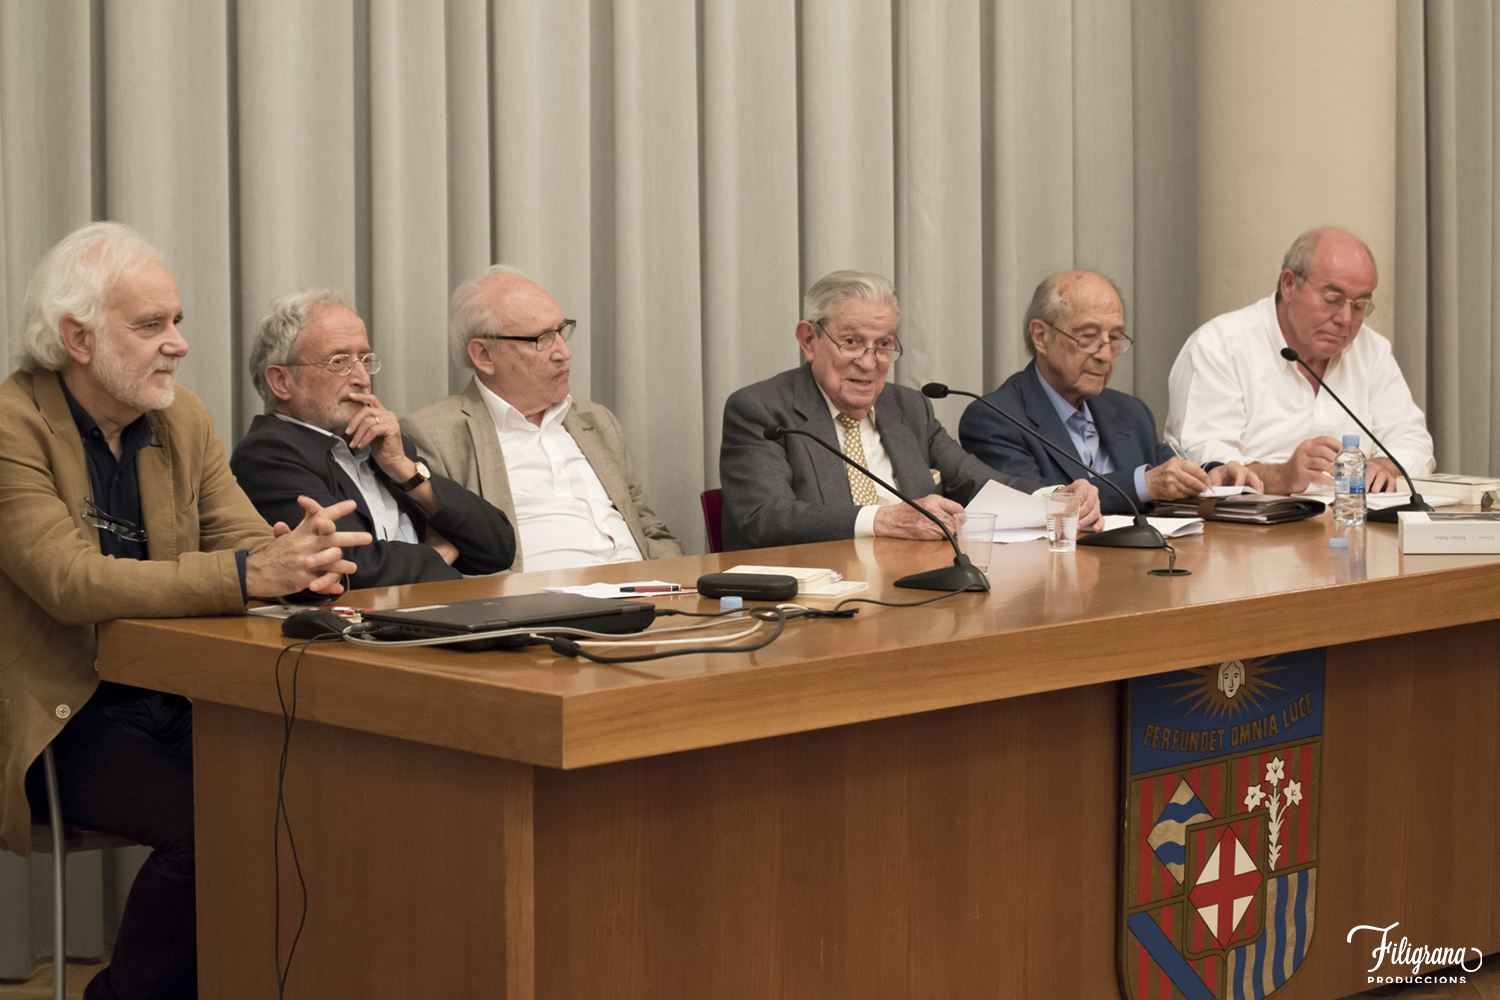 Ramón Andrés, Laureano Bonet, Joaquim Marco, Enrique Badosa, José Corredor-Matheos , José Florencio Martínez